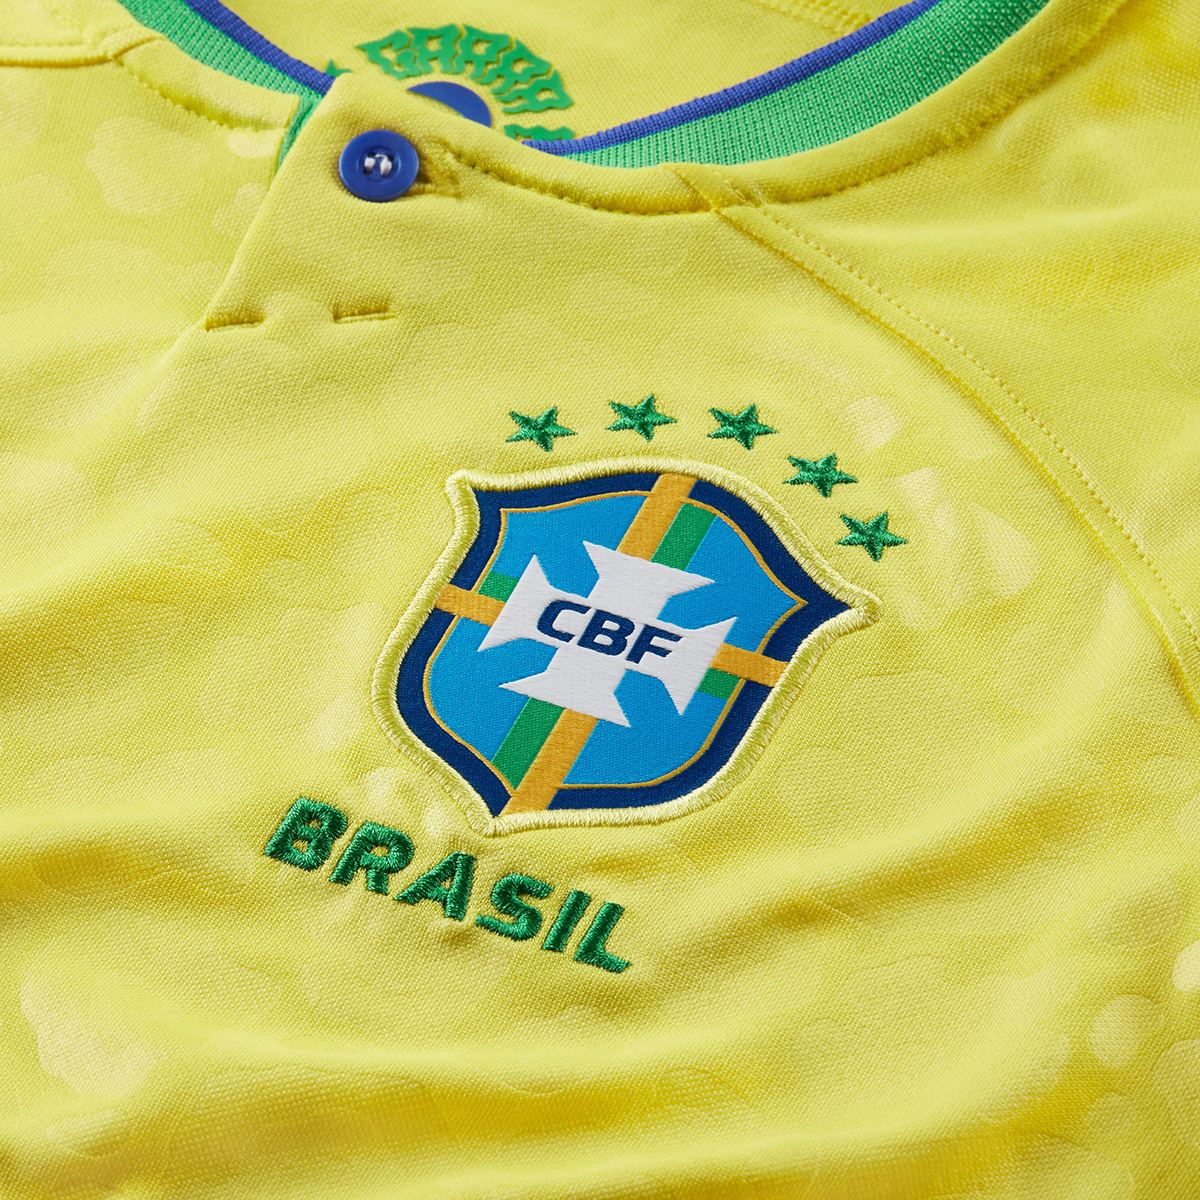 Camiseta Brasil Nike Titular Stadium 22/23 Infantil,  image number null